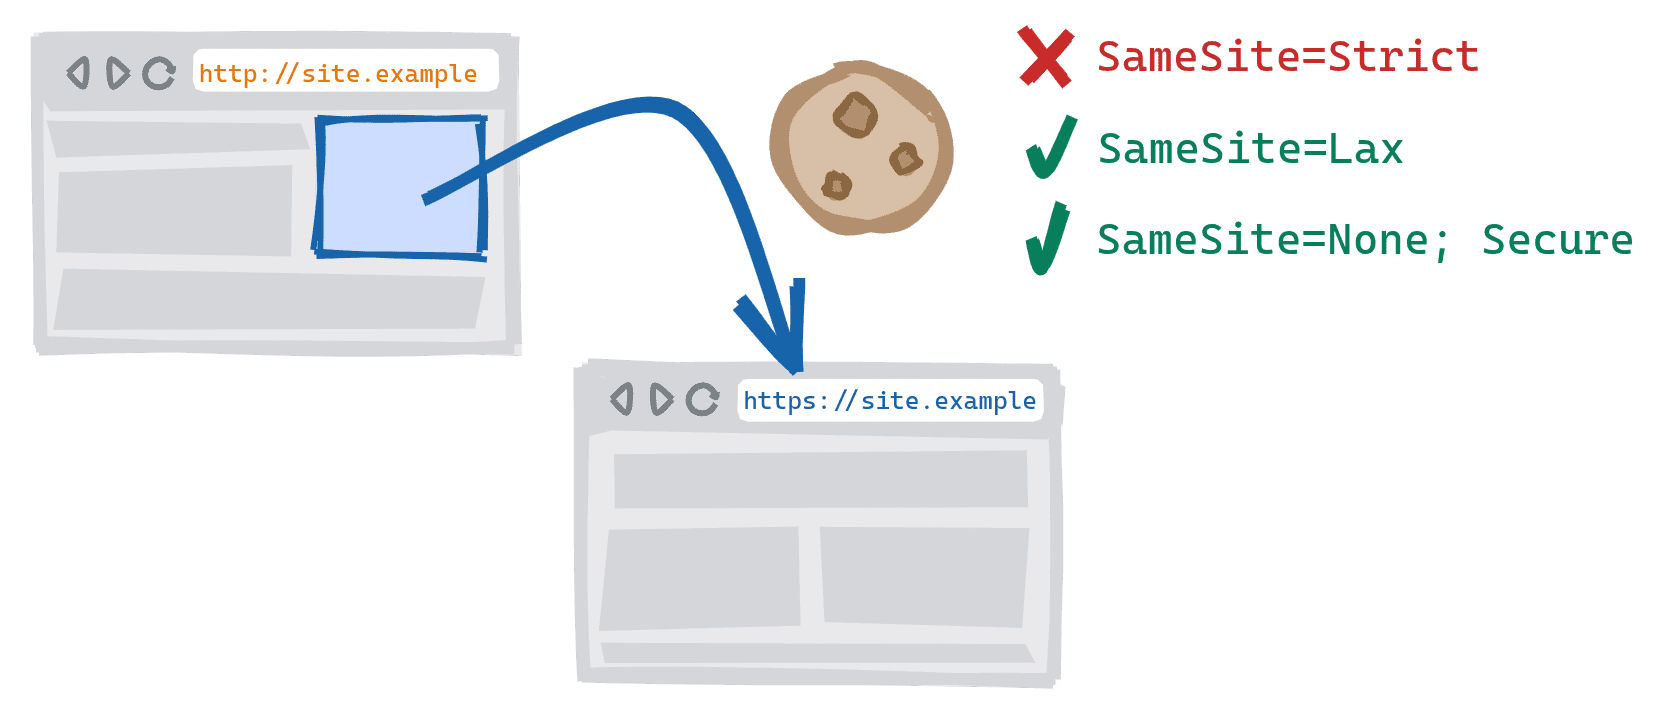 在不安全的 HTTP 版本网站上点击指向安全 HTTPS 版本的链接，从而触发跨架构导航。SameSite=Strict Cookie 被阻止，SameSite=Lax 和 SameSite=None；允许使用安全 Cookie。